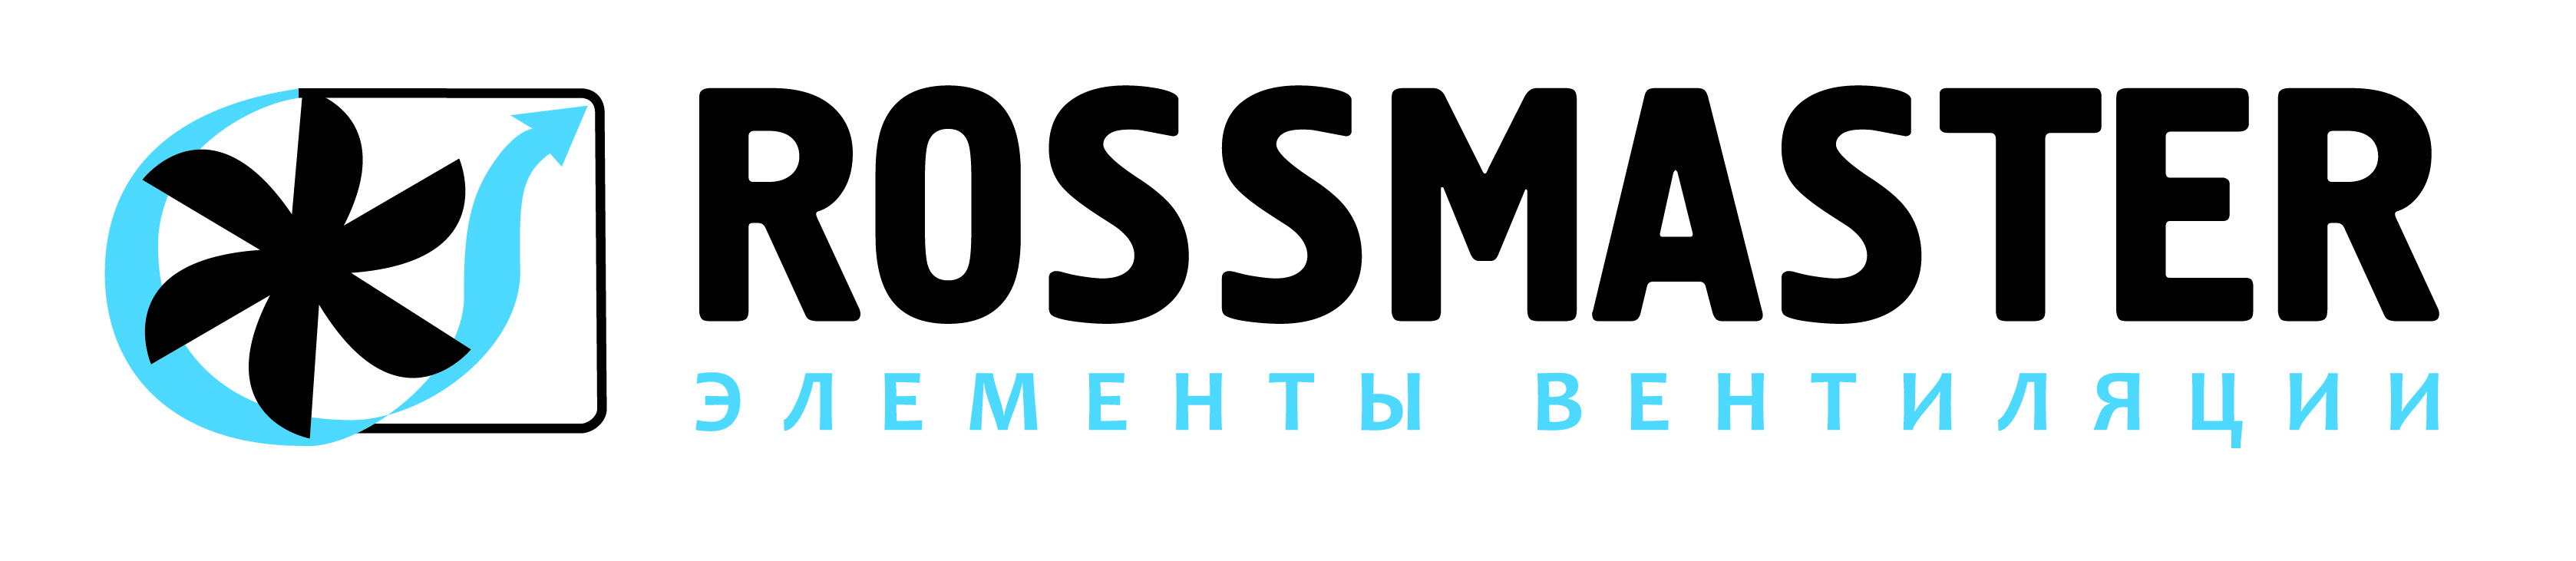 rossmaster_logo